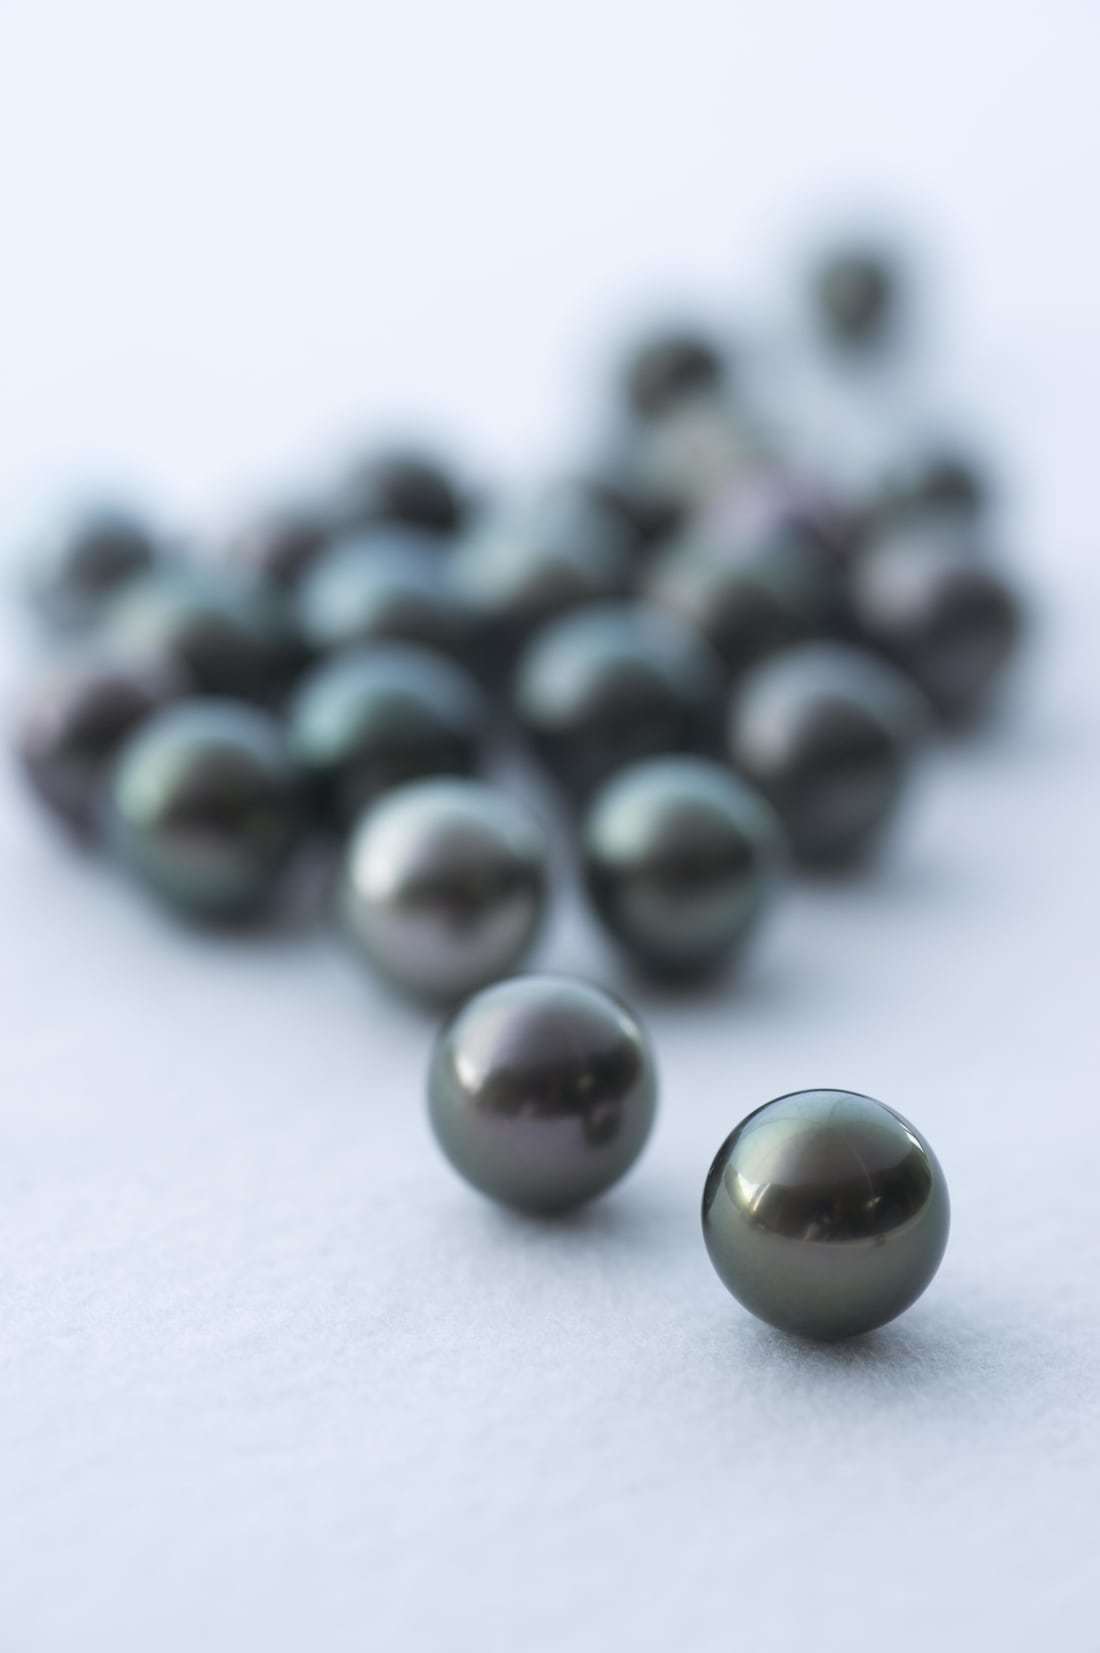 真珠は、砂や骨片といった異物が貝などの軟体動物の体内に入り込むことにより自然に生成される/TASAKI